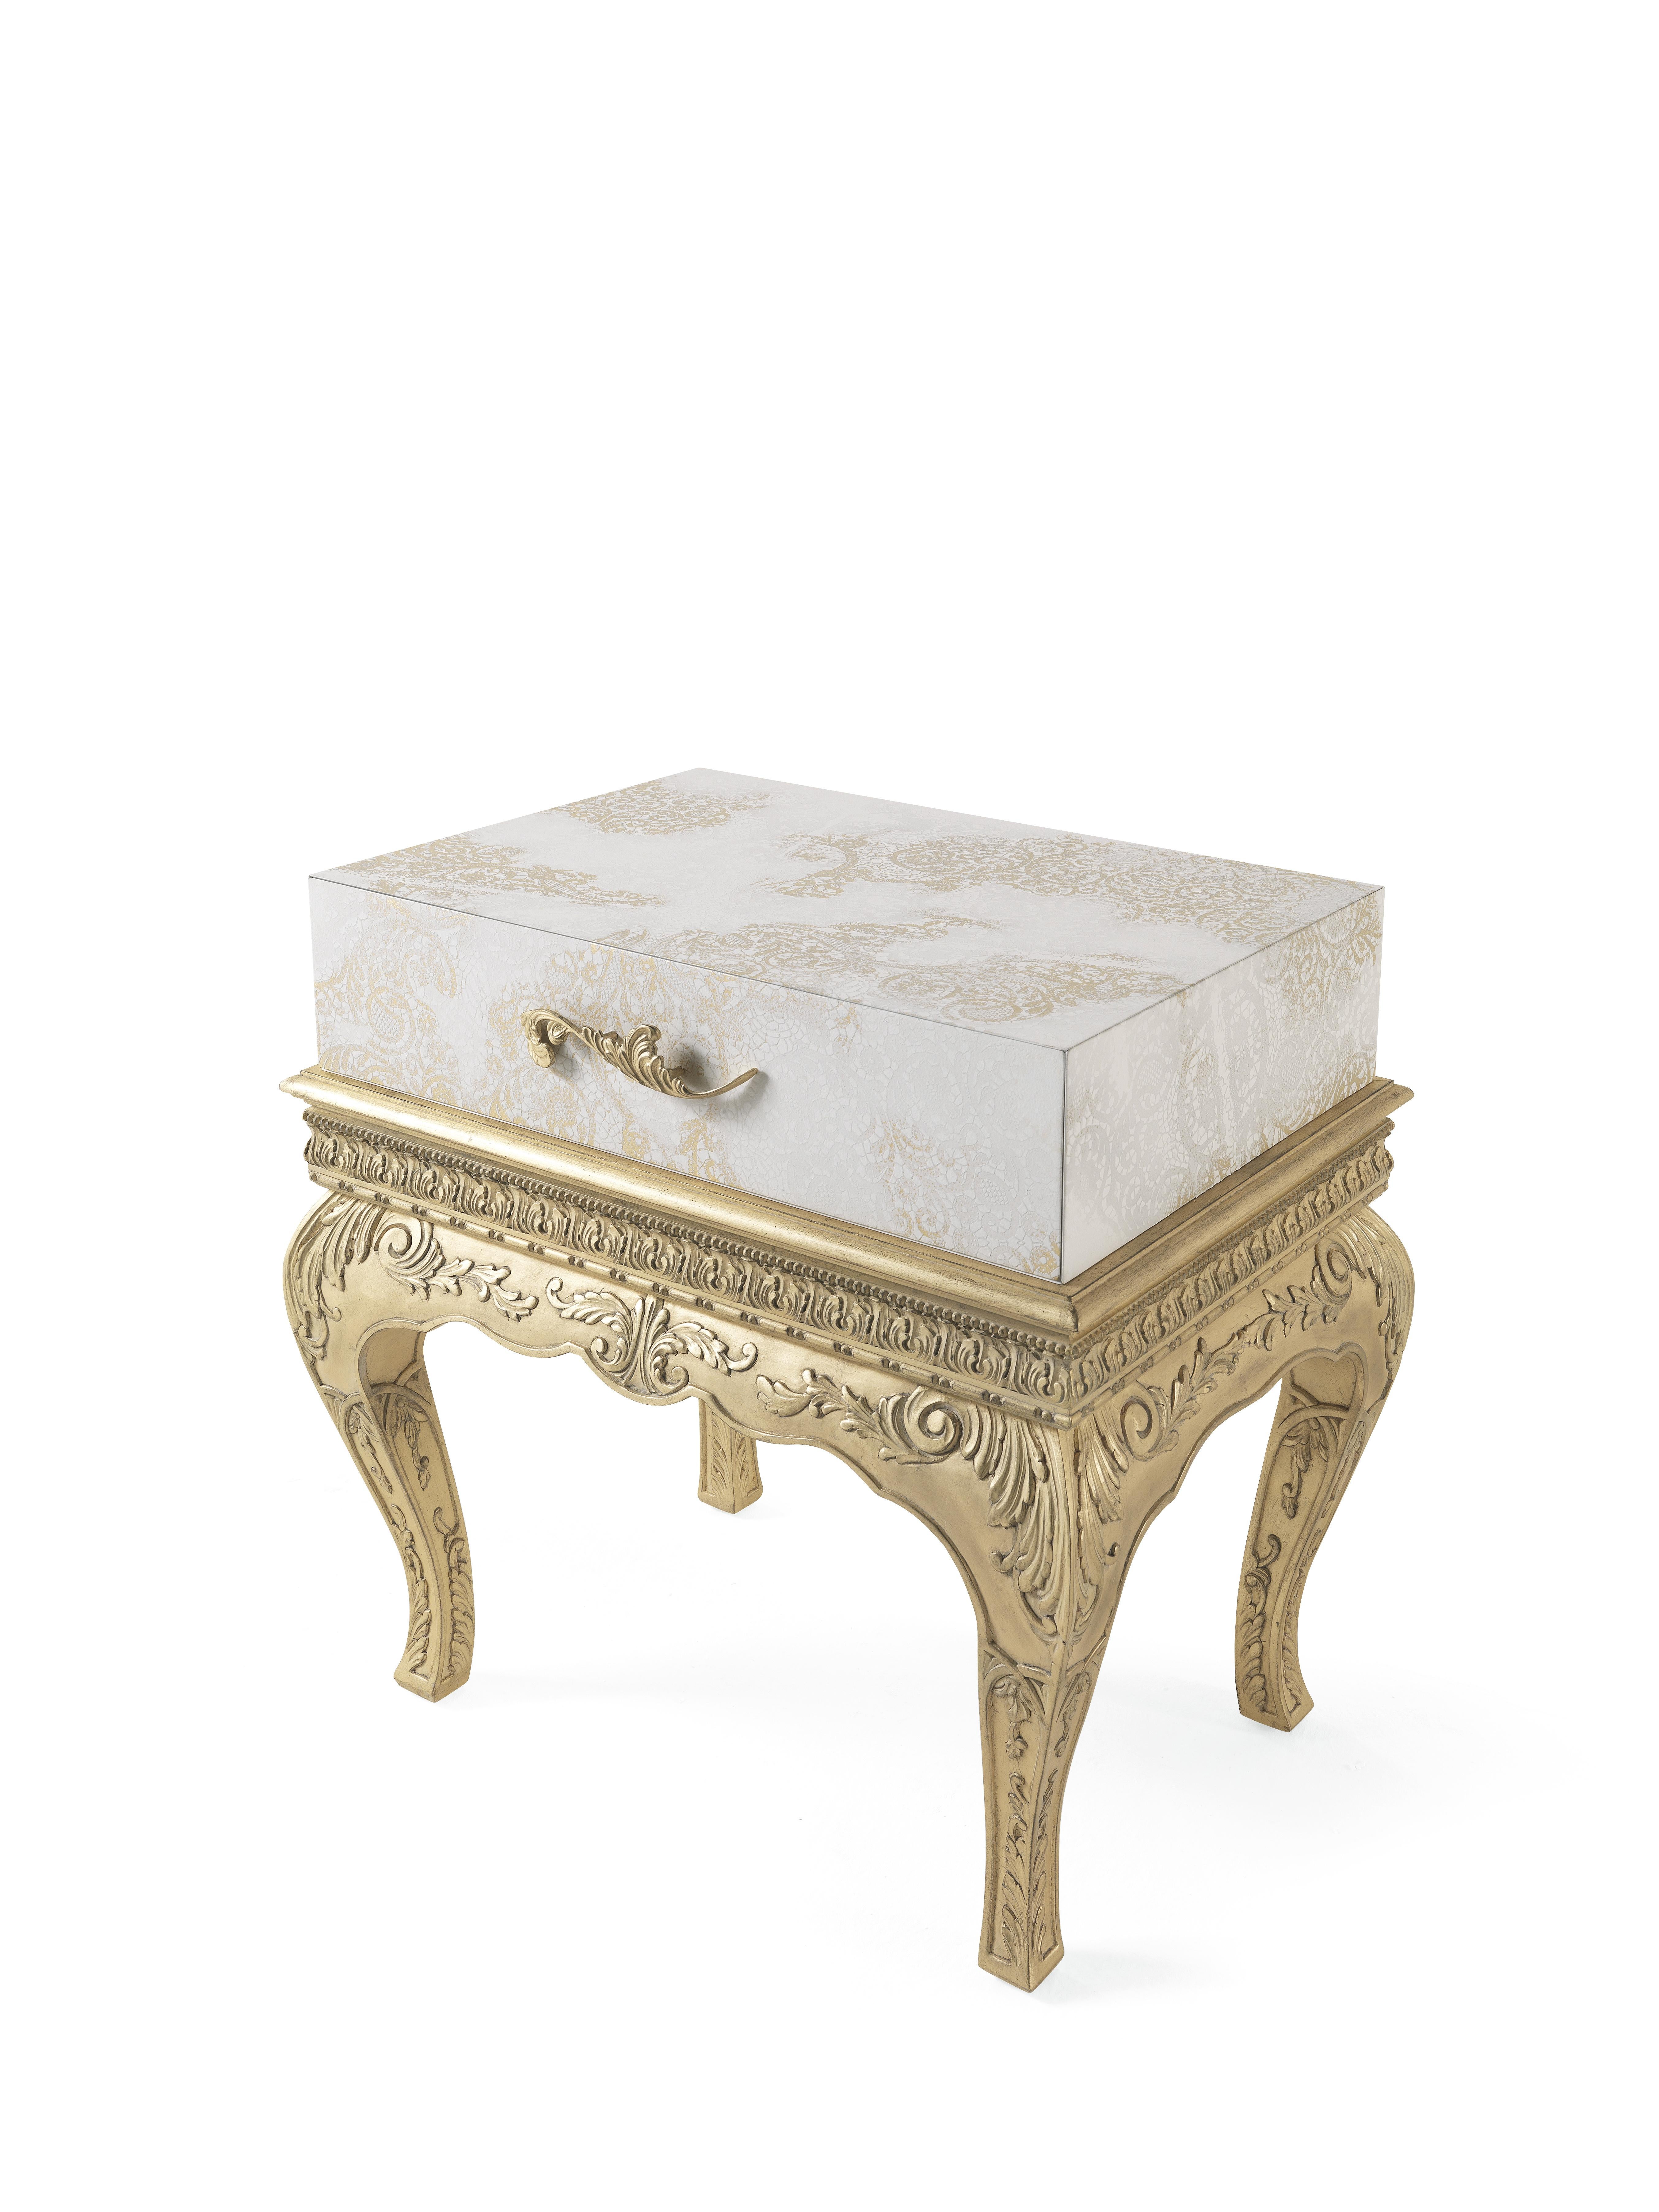 Der Nachttisch der Linie Brocart vervollständigt die Schlafzimmermöbel mit seinem raffinierten Stil, der an den Luxus der französischen Adelshöfe des 17. und 18. Jahrhunderts erinnert. Der Sockel mit handgeschnitzten Beinen und antiker